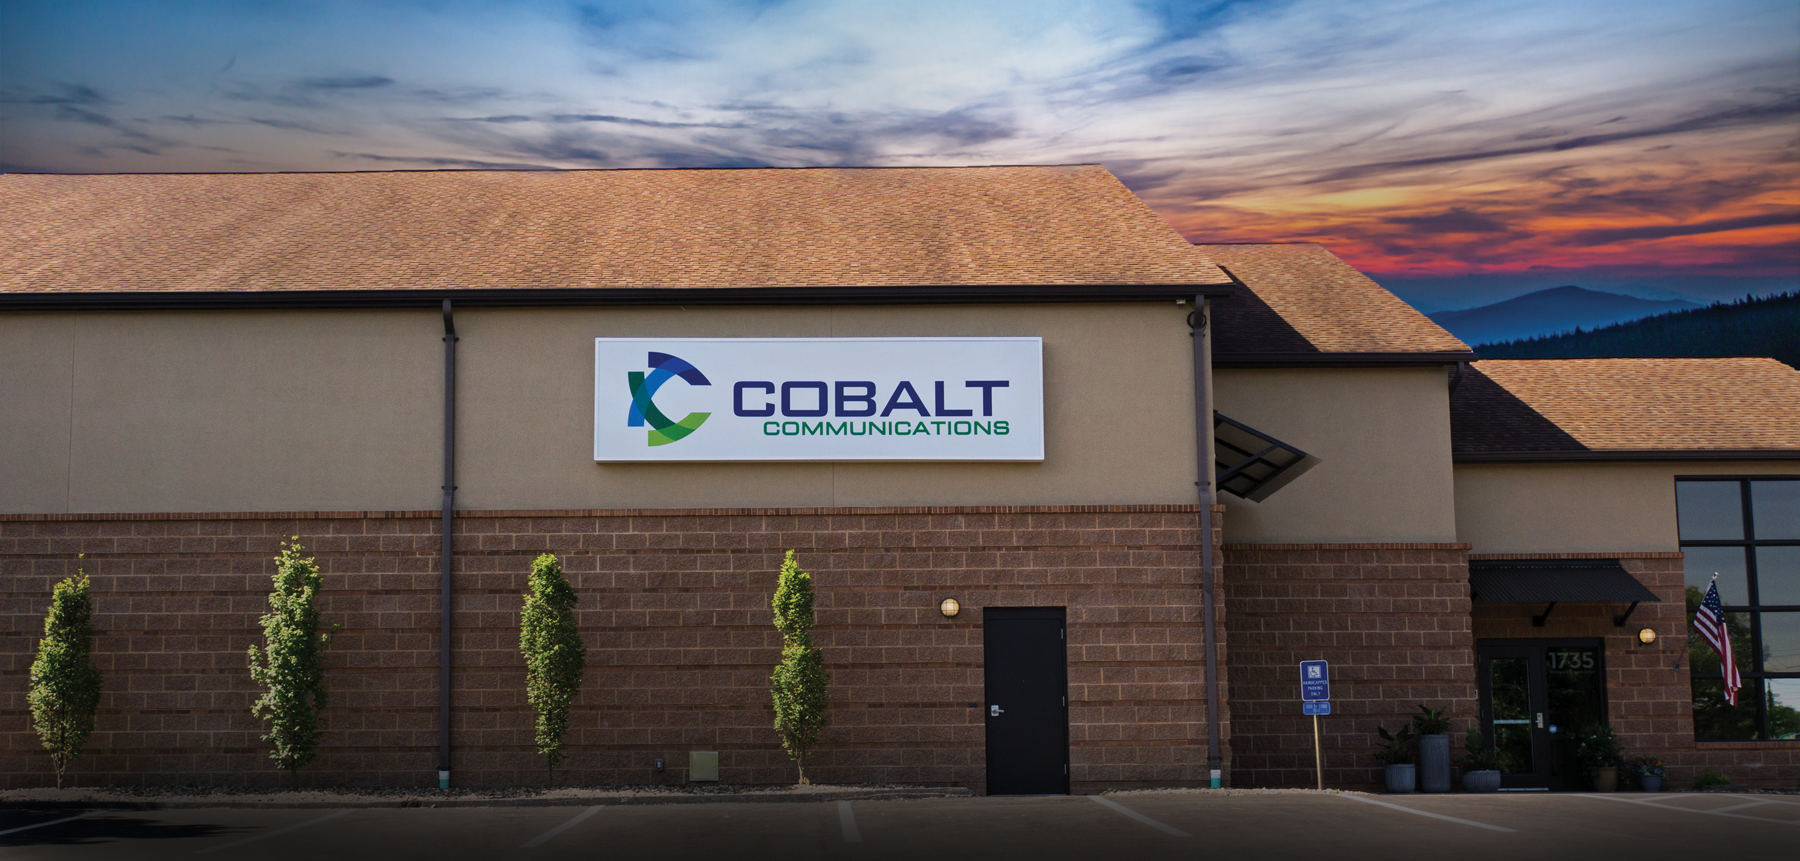 cobalt communications building